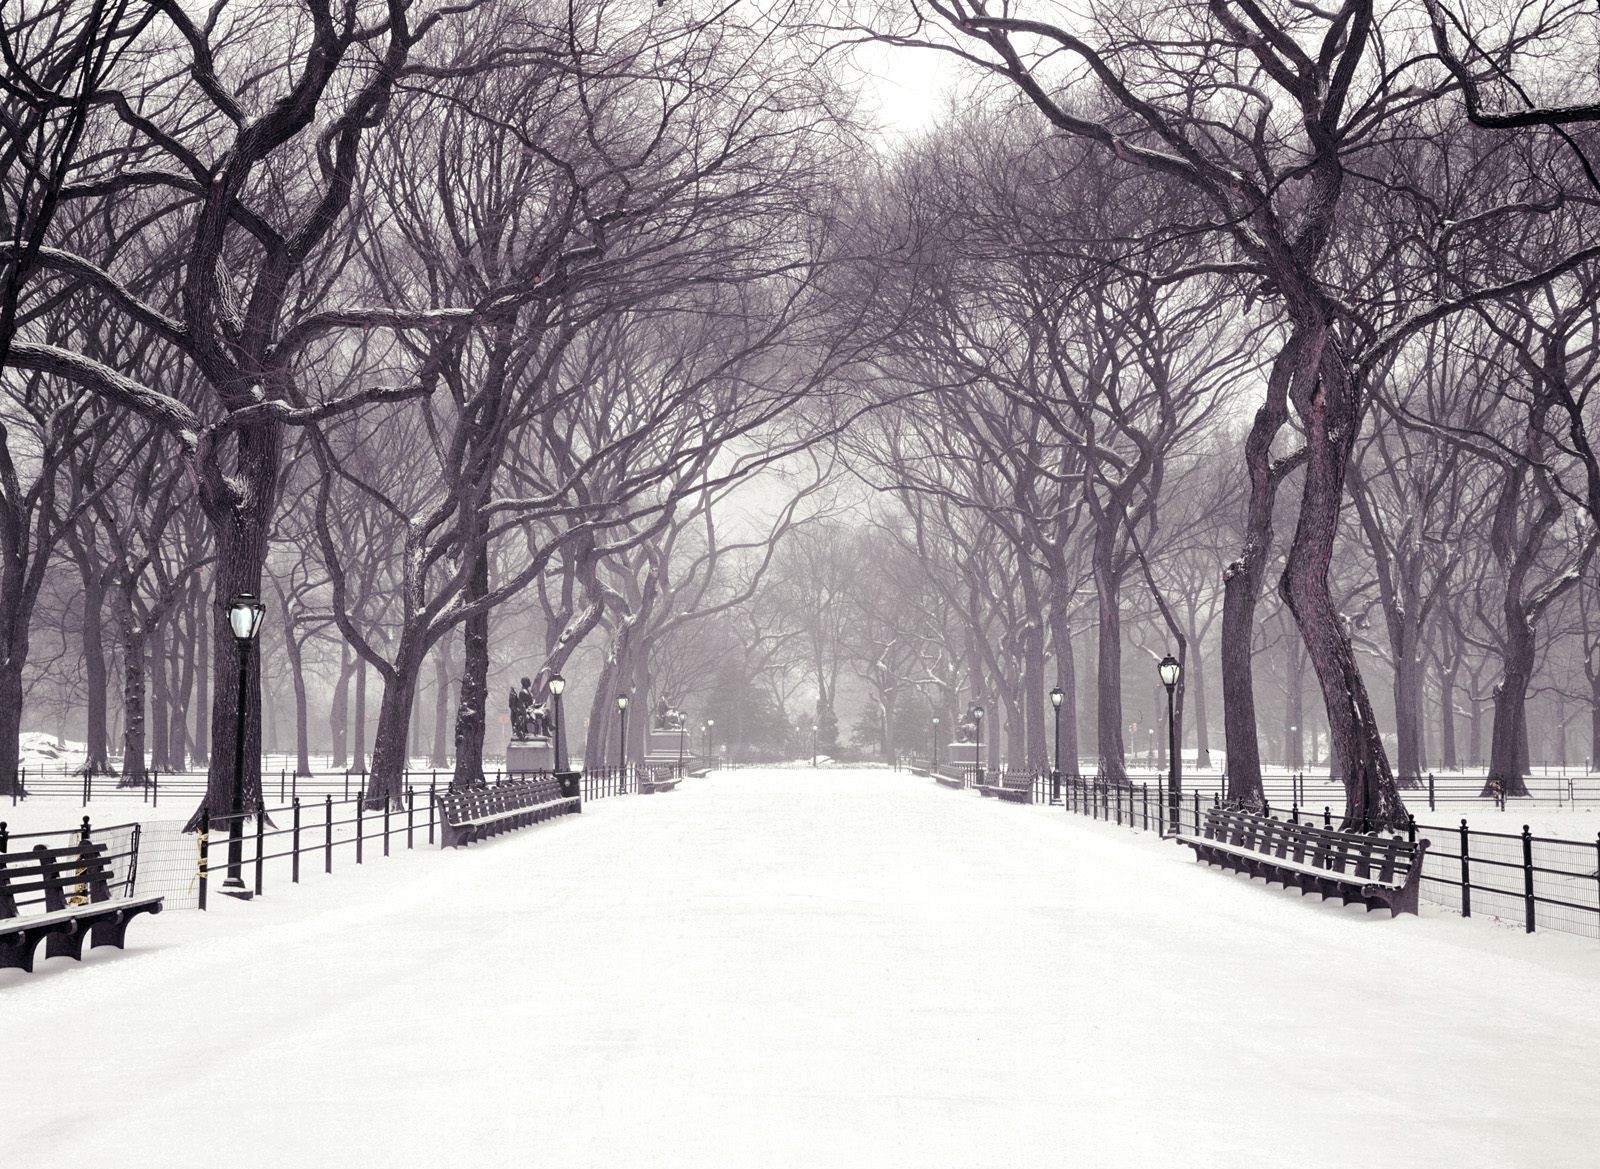 Hecallsmestatuary Walk, Central Park, New York City, - New York City Central Park Winter , HD Wallpaper & Backgrounds